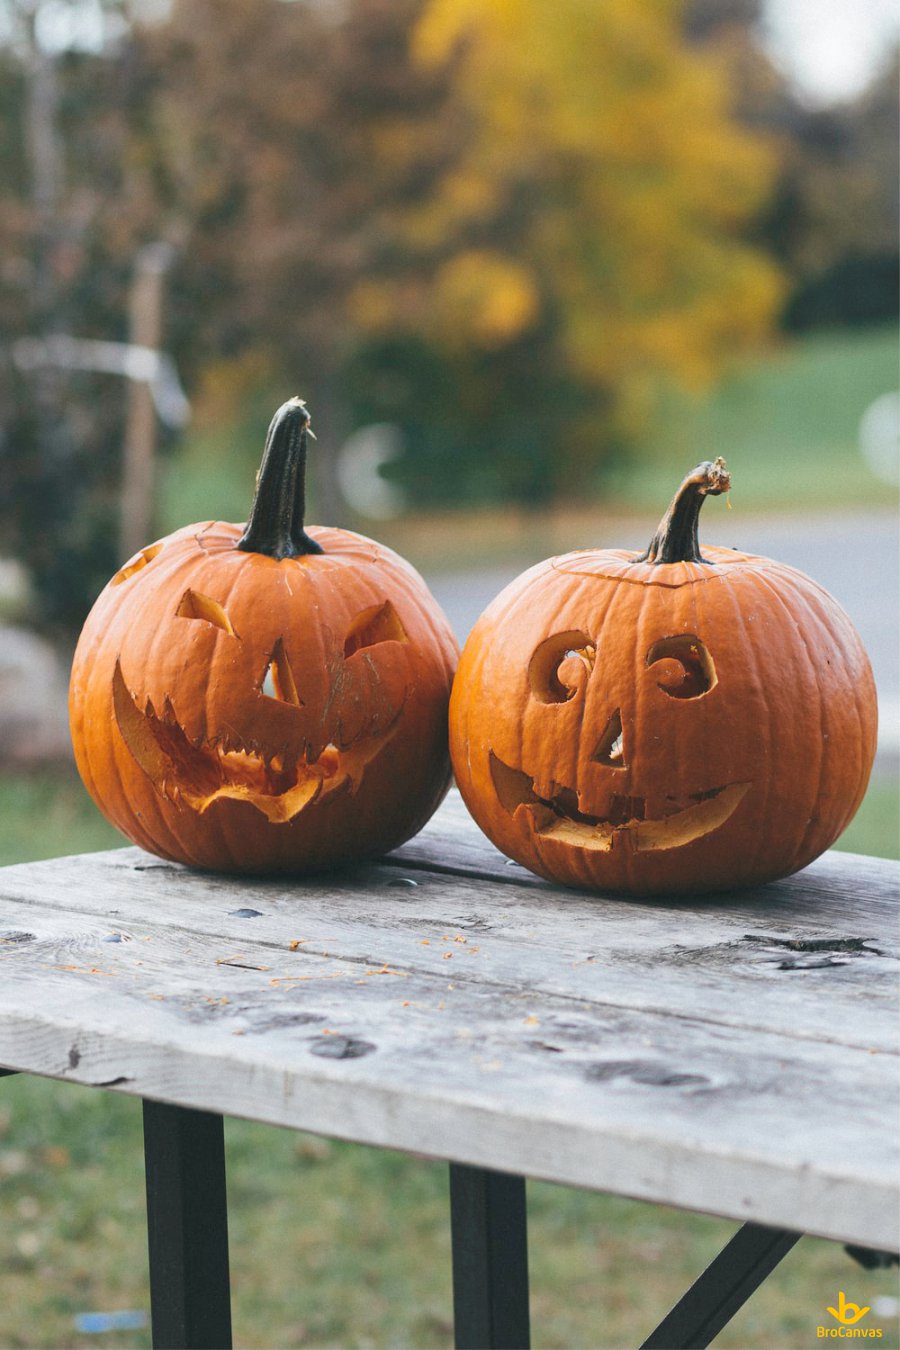 Khắc bí ngô là hoạt động phổ biến trong halloween